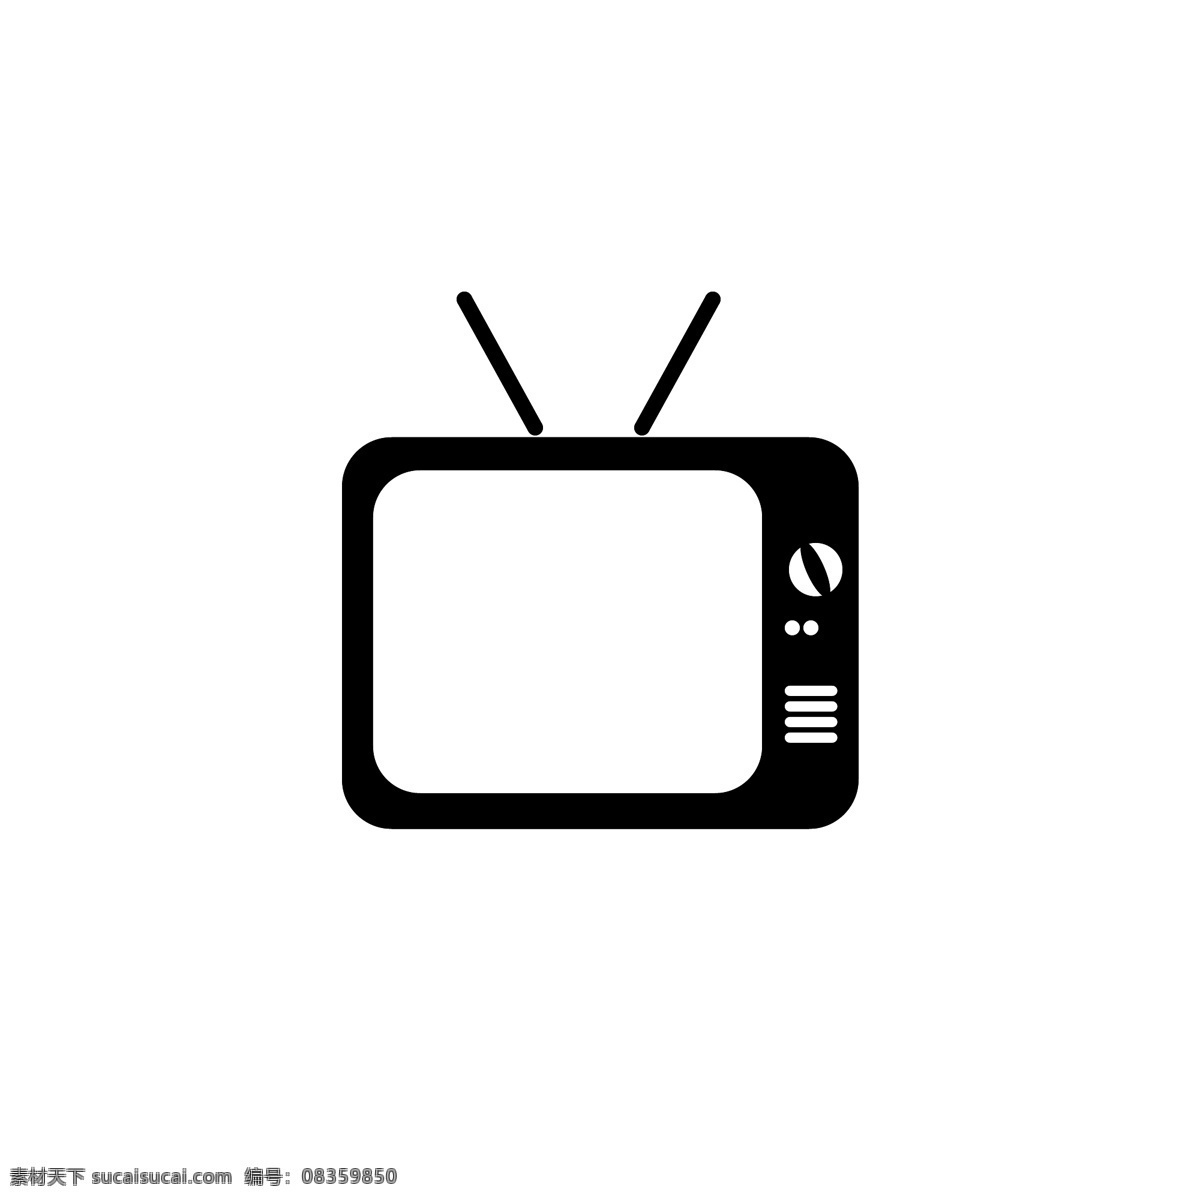 矢量图 老 电视机 黑白电视 老式电视机 天线 卫星电视